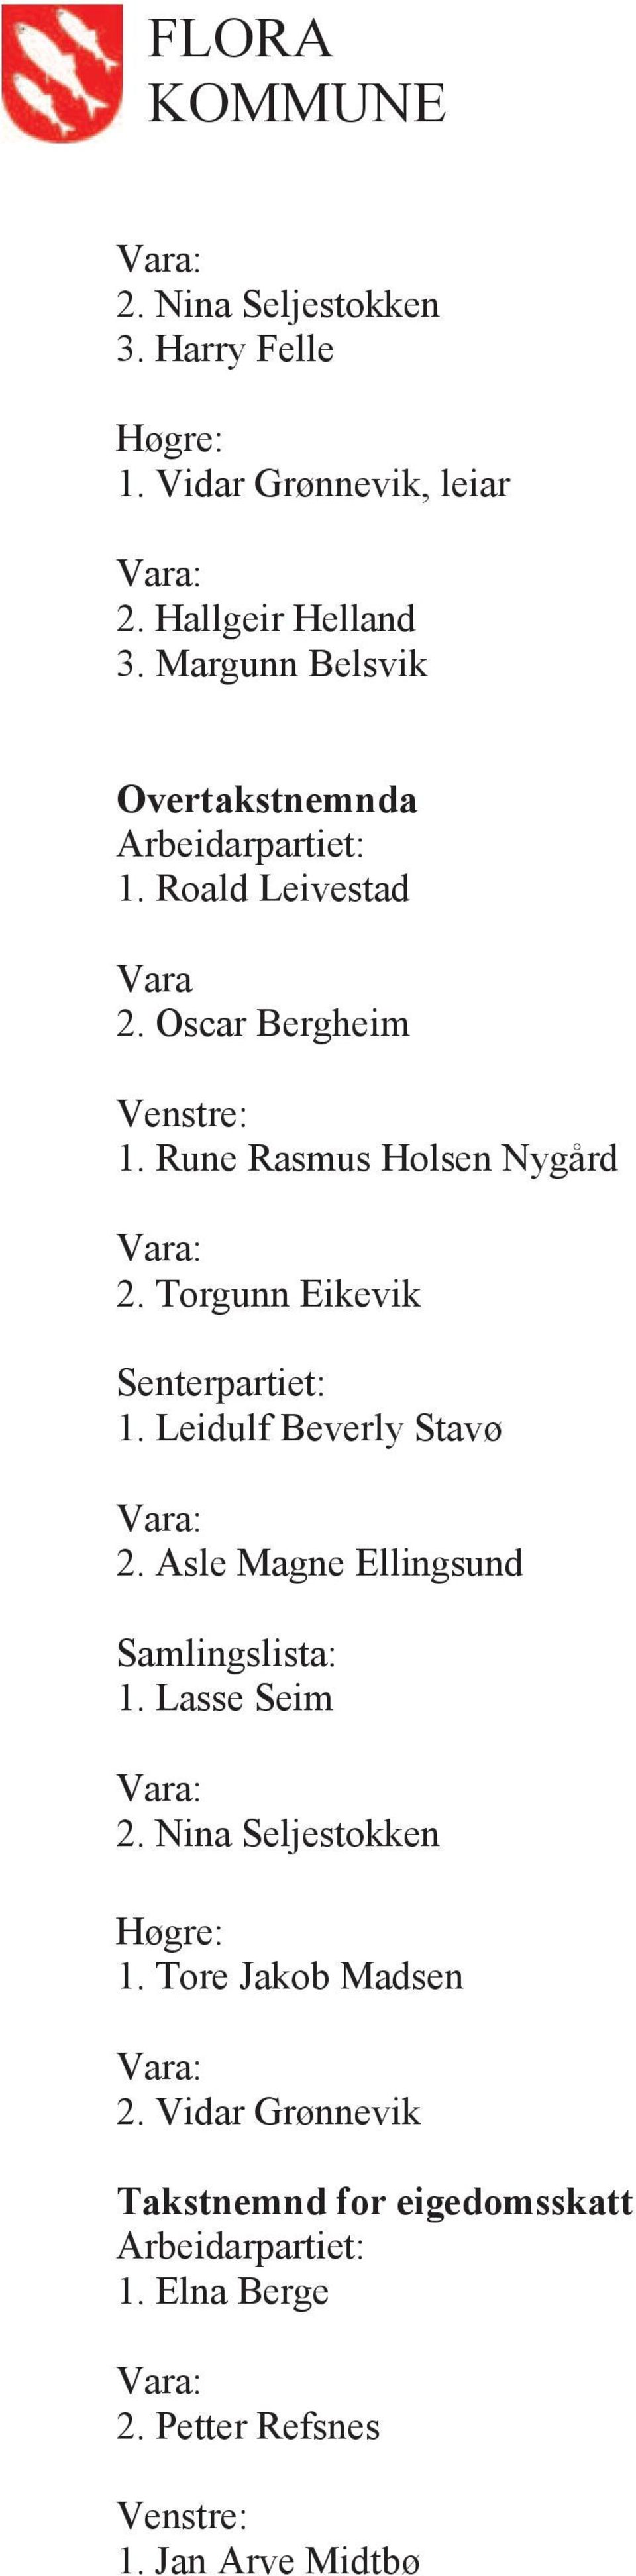 Torgunn Eikevik Senterpartiet: 1. Leidulf Beverly Stavø 2. Asle Magne Ellingsund Samlingslista: 1.